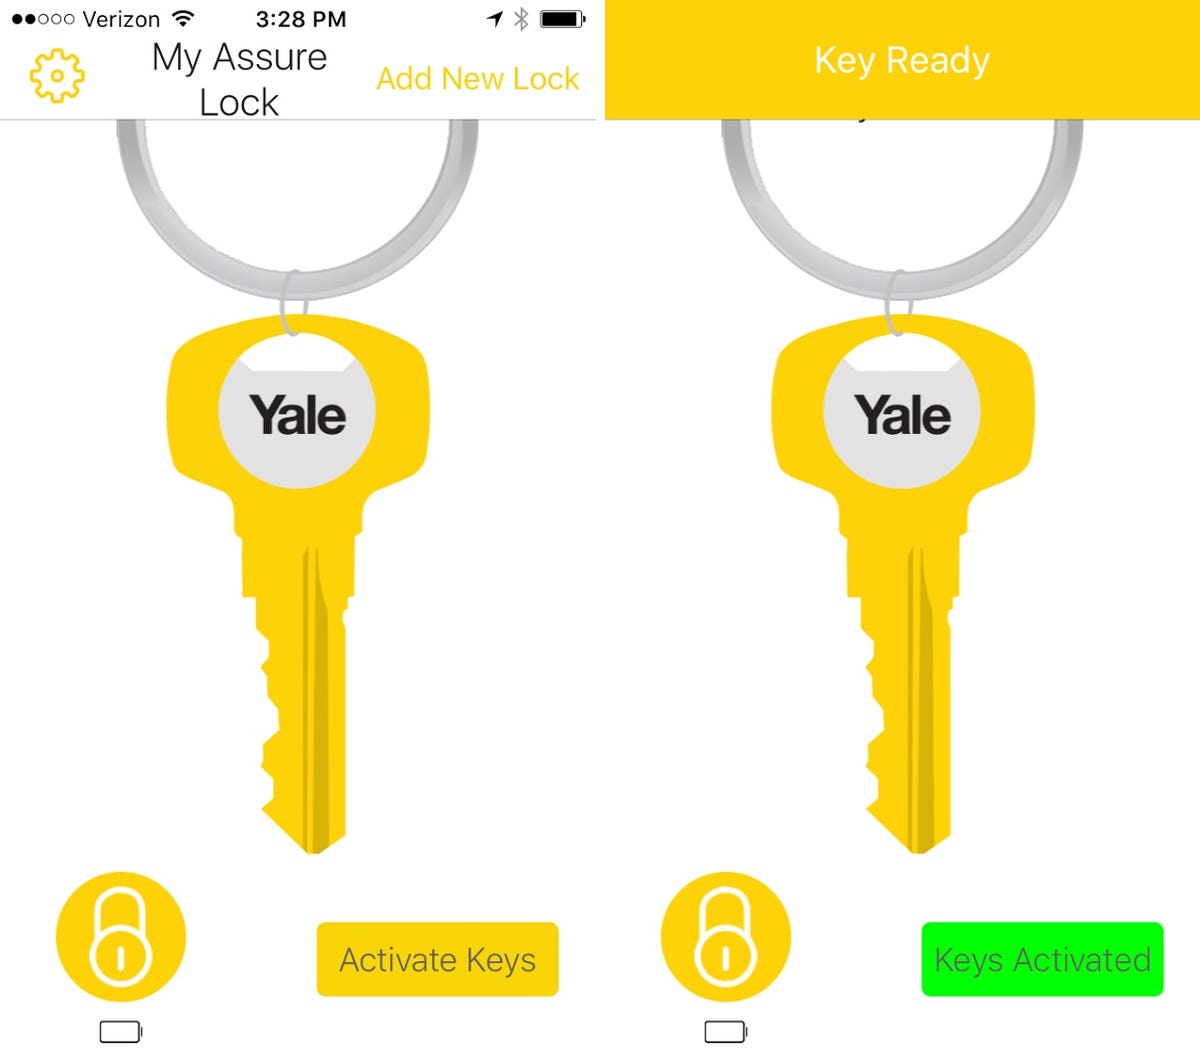 yale-assure-digital-key.jpg